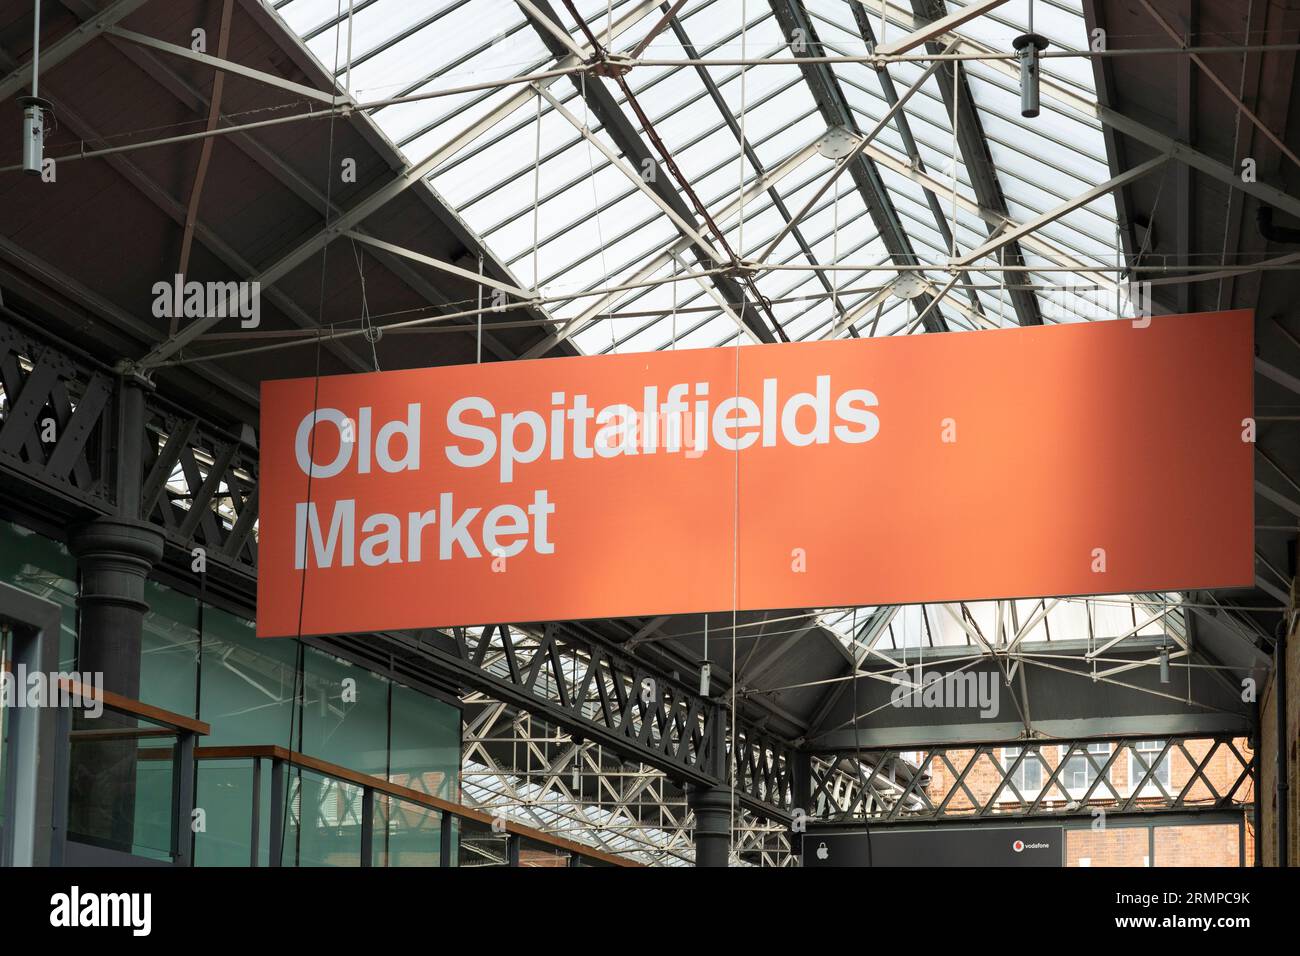 Un panneau suspendu annonçant Old Spitalfields Market dans Old Spitalfields Hall couvert de marché. Spitalfields, Londres, Royaume-Uni Banque D'Images